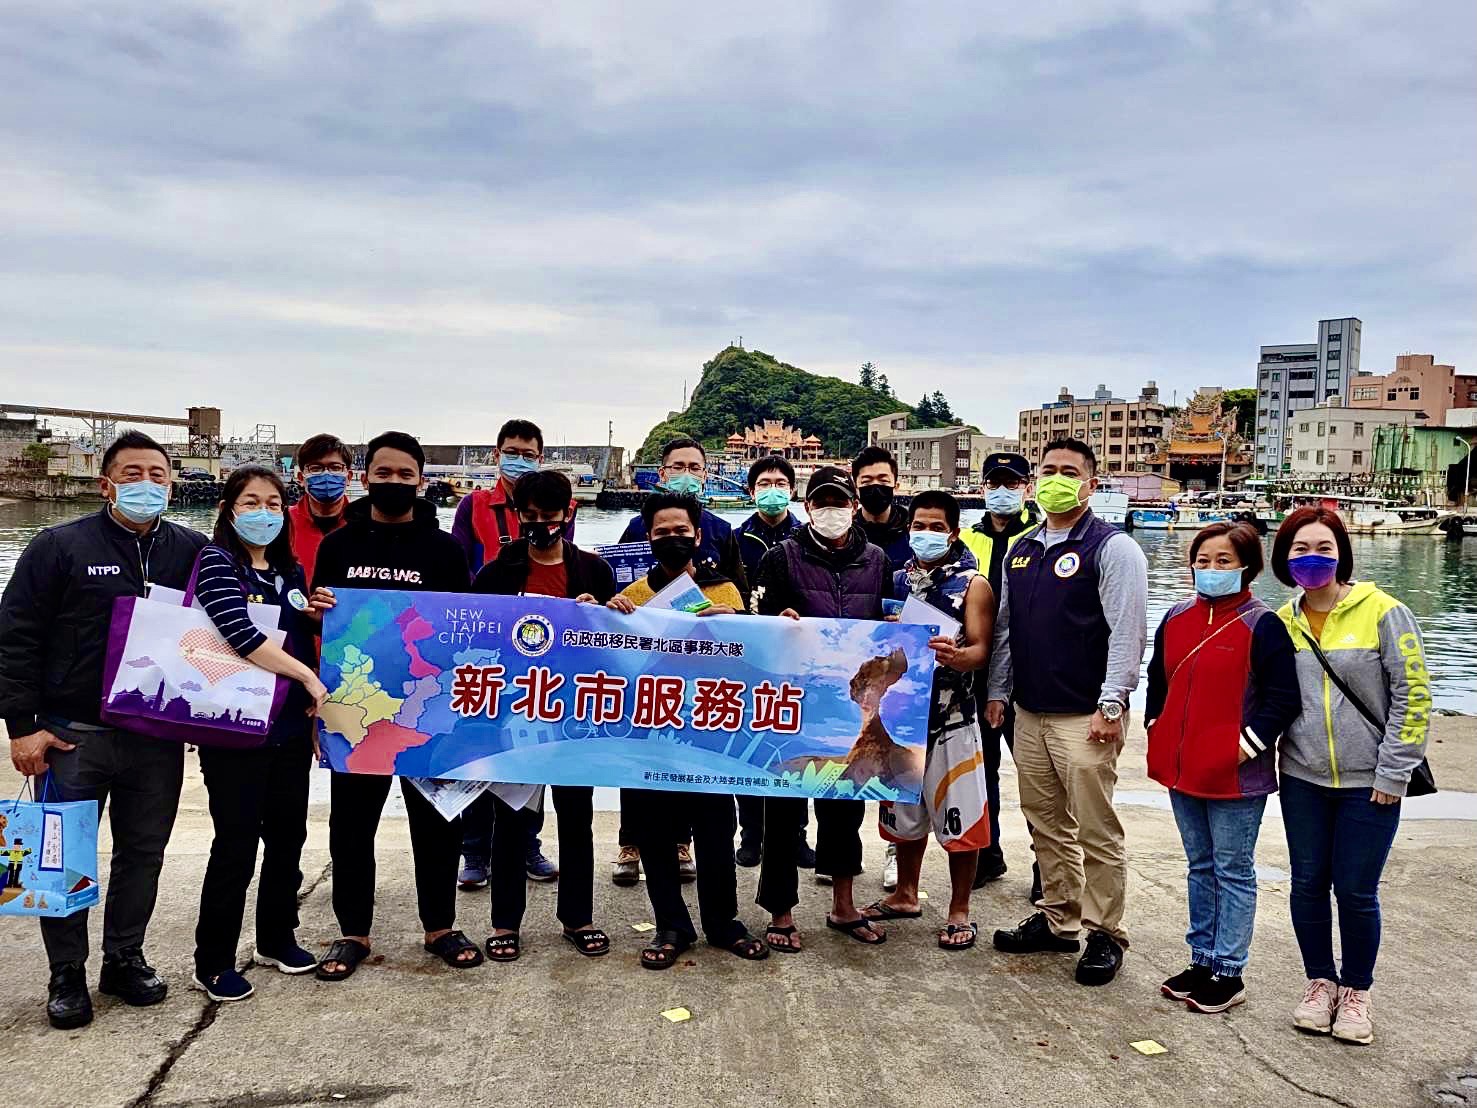 Kantor Imigrasi Kota New Taipei dan Kantor Polisi Jinshan berfoto bersama dengan para nelayan asing di area pelabuhan yang menerima pengumuman pencegahan pandemi. Sumber: Stasiun Layanan Kota New Taipei